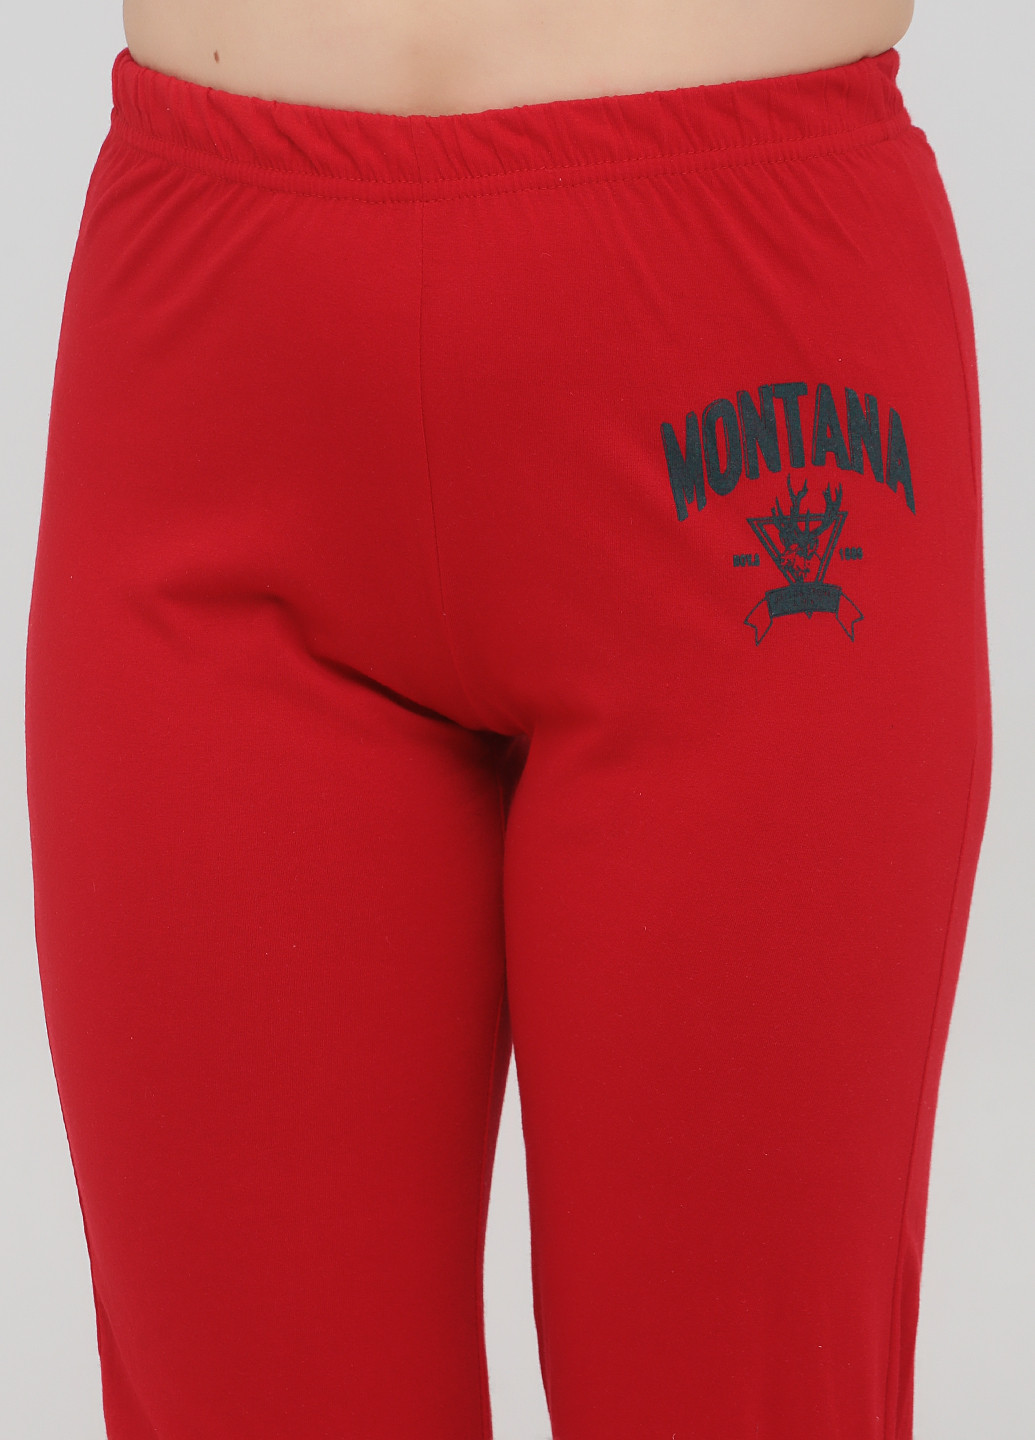 Красная всесезон пижама (футболка, брюки) футболка + брюки Carla Mara